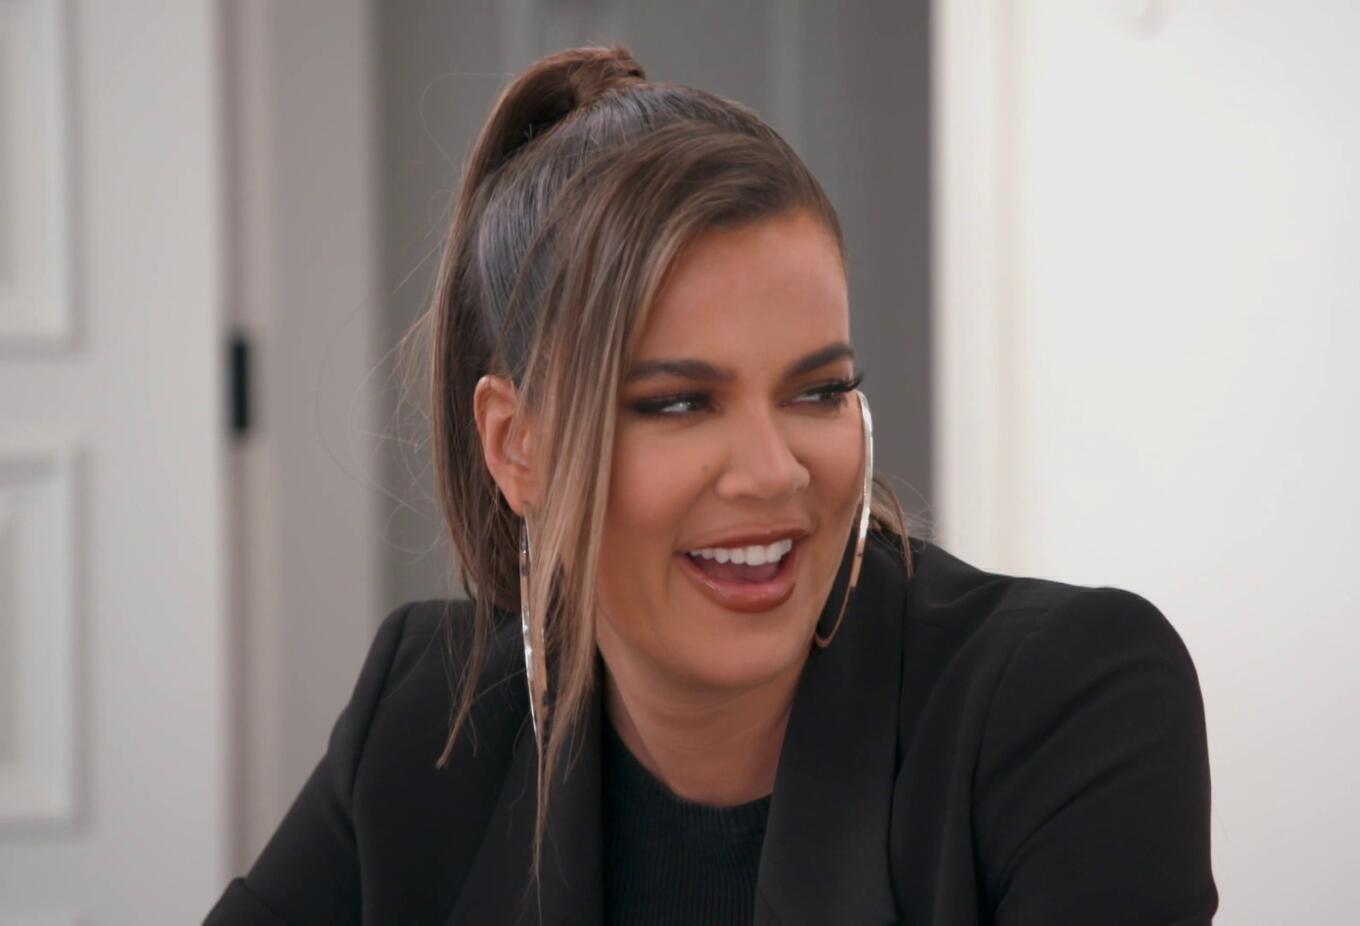 Khloe Kardashian - Keeping Up With The Kardashians | Season 20 Episode 7 | Khloe Kardashian style